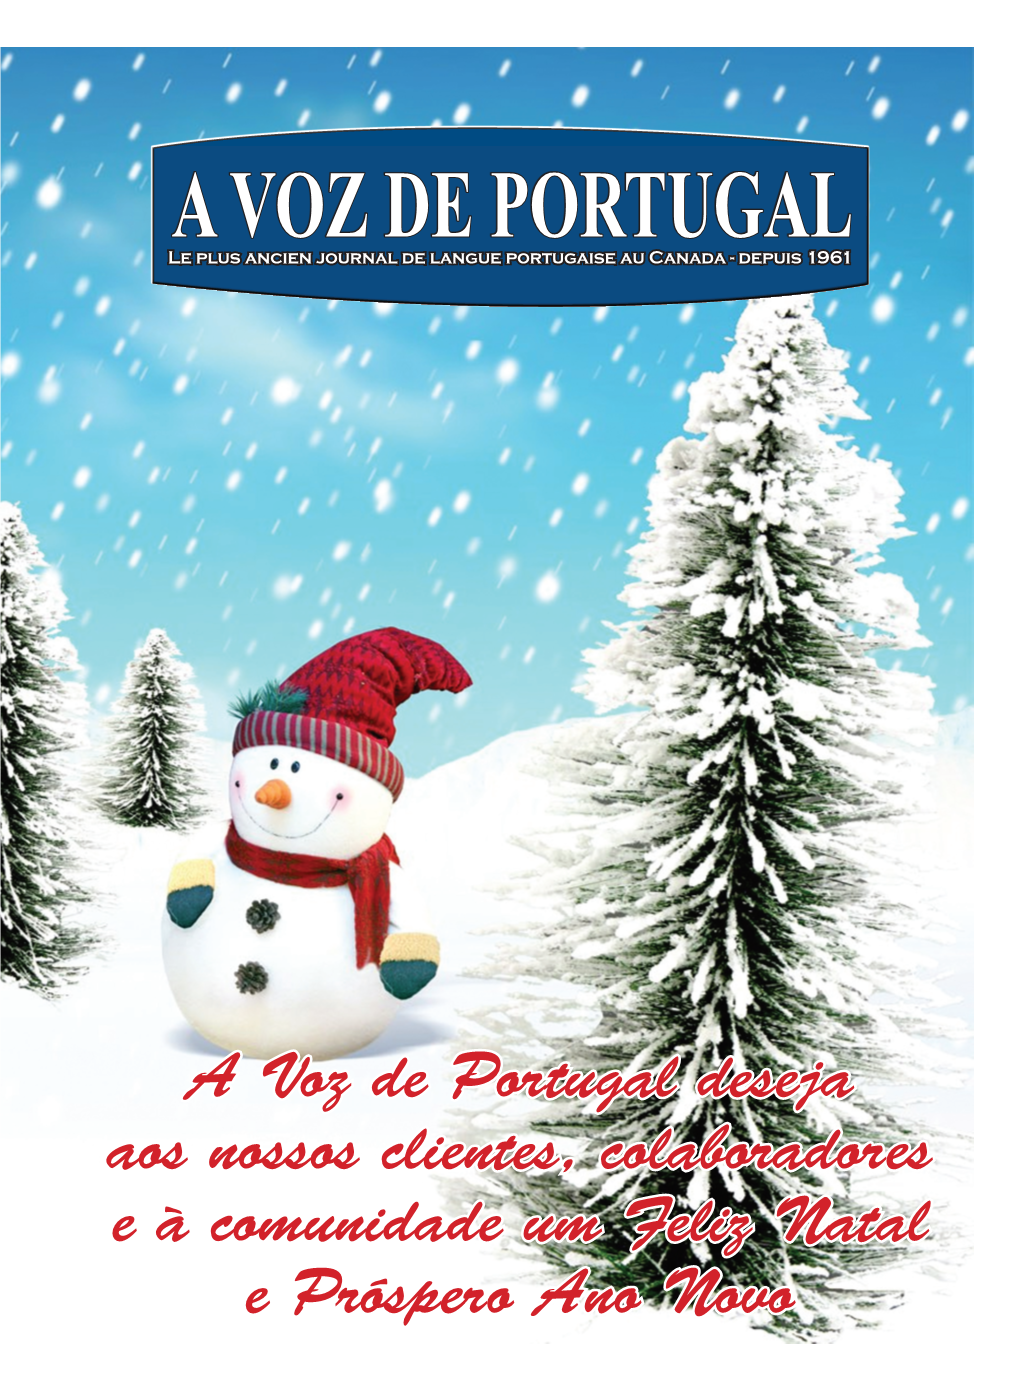 A Voz De Portugal Deseja Aos Nossos Clientes, Colaboradores E À Comunidade Um Feliz Natal E Próspero Ano Novo a Voz De Portugal | 23 DE Dezembro De 2013 | P